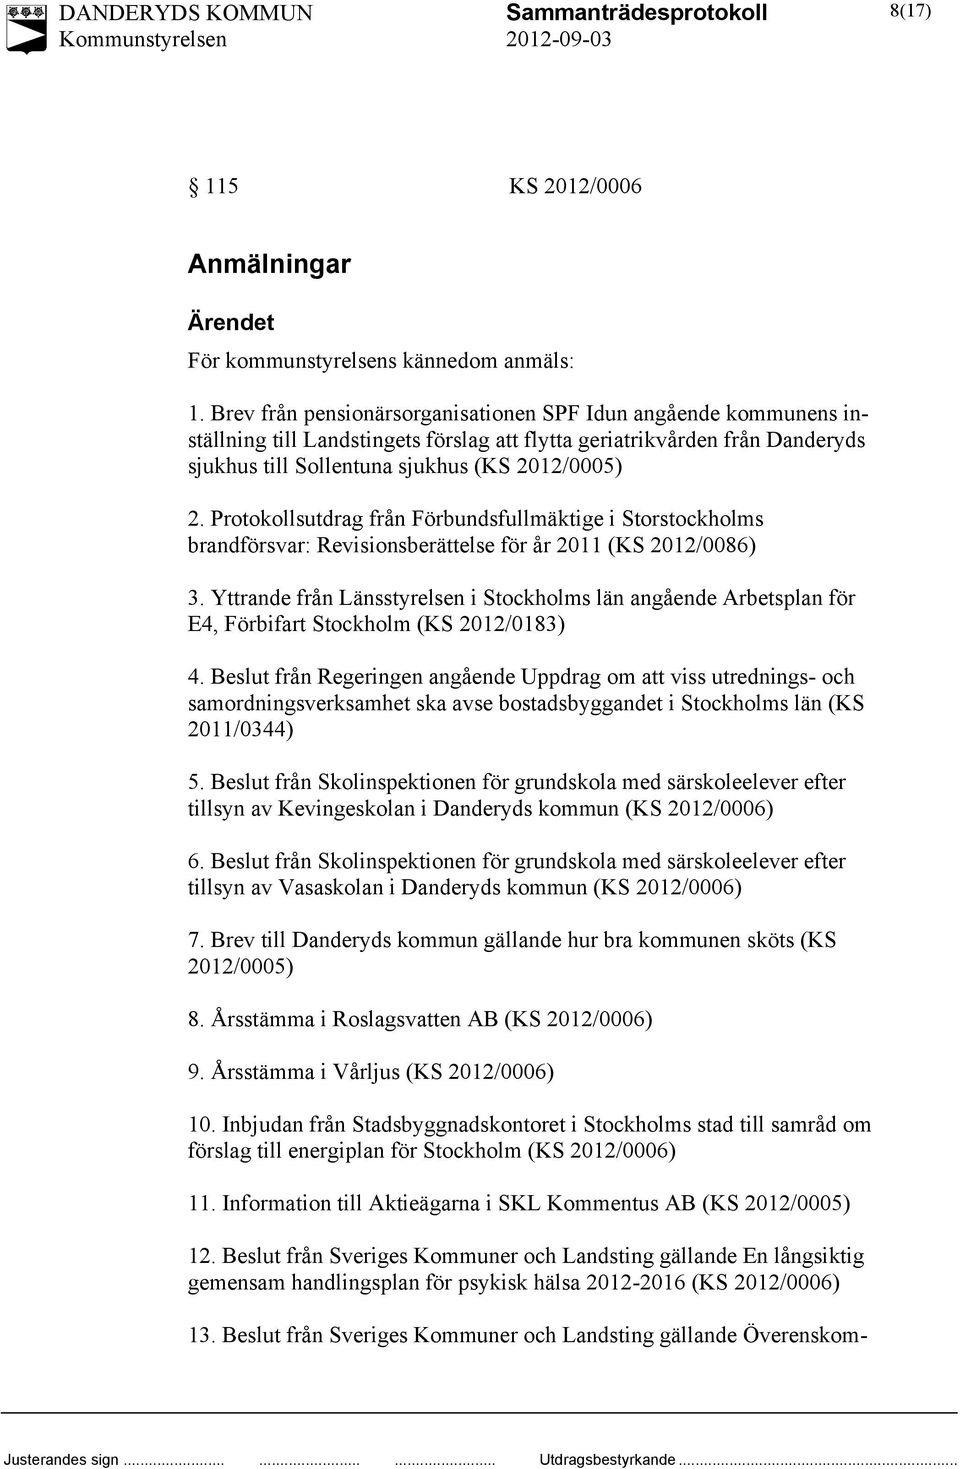 Protokollsutdrag från Förbundsfullmäktige i Storstockholms brandförsvar: Revisionsberättelse för år 2011 (KS 2012/0086) 3.